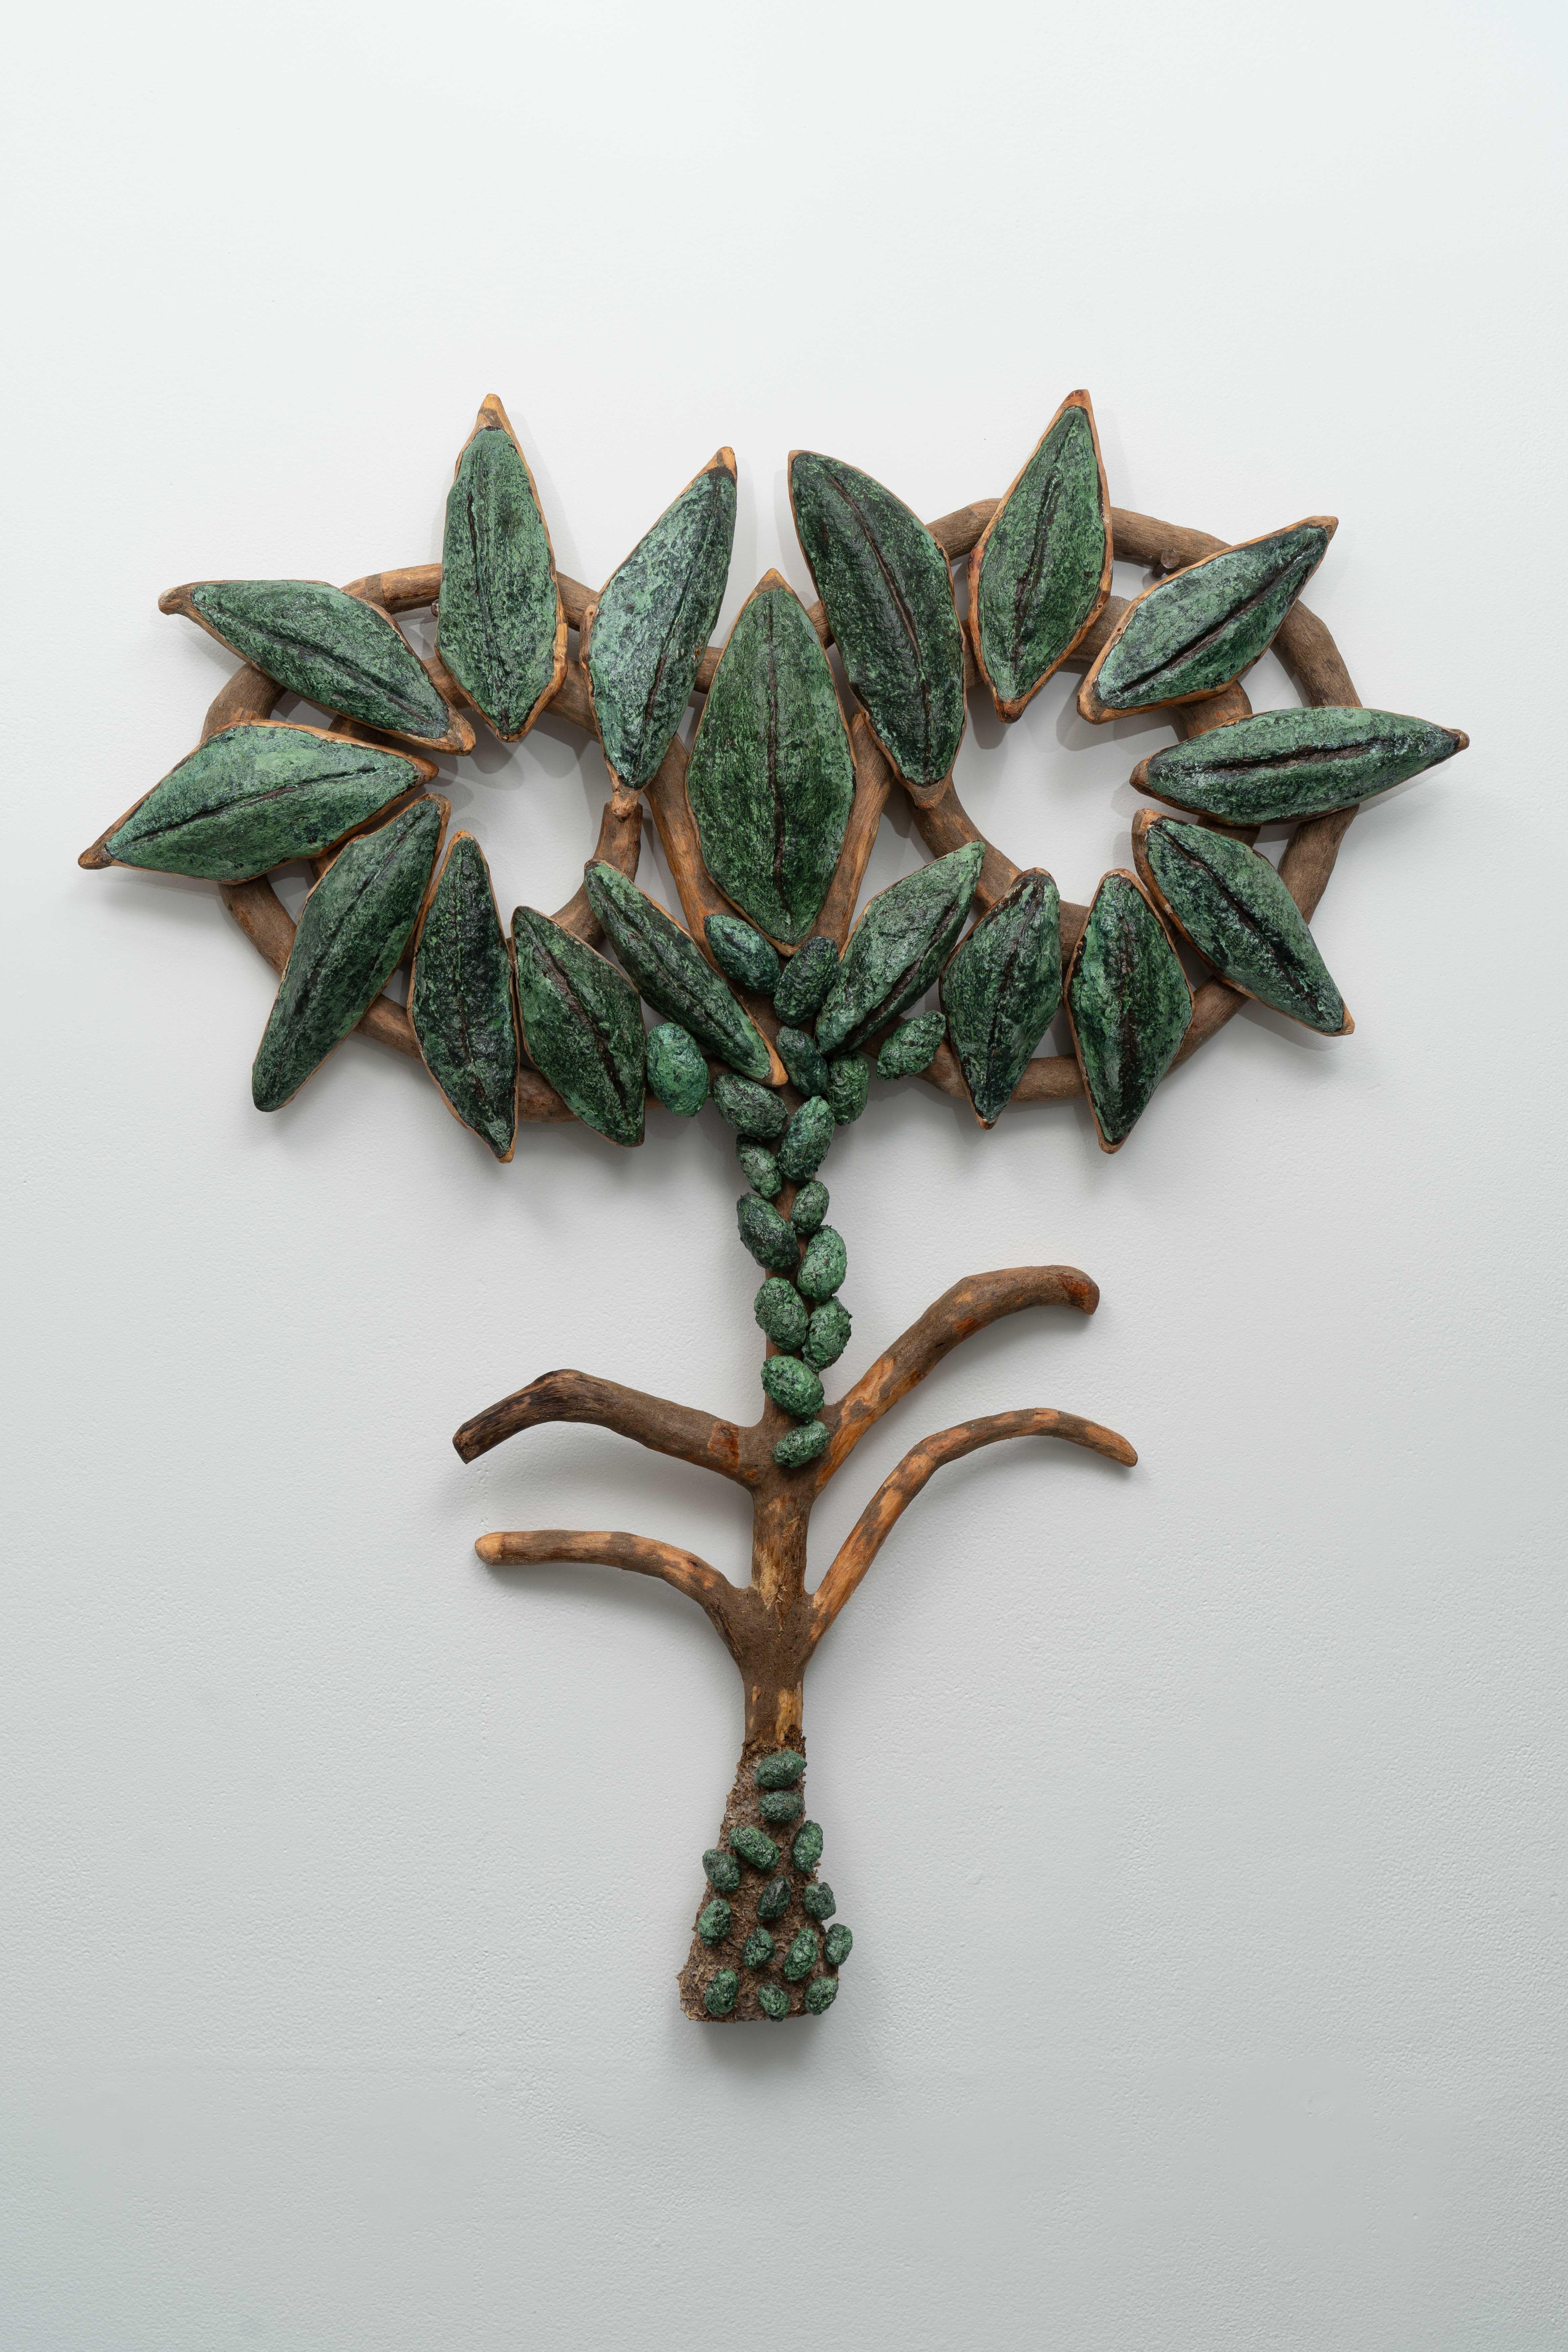 Loren Eiferman Still-Life Sculpture - Wall Sculpture of plant: "Spiraling Borage”